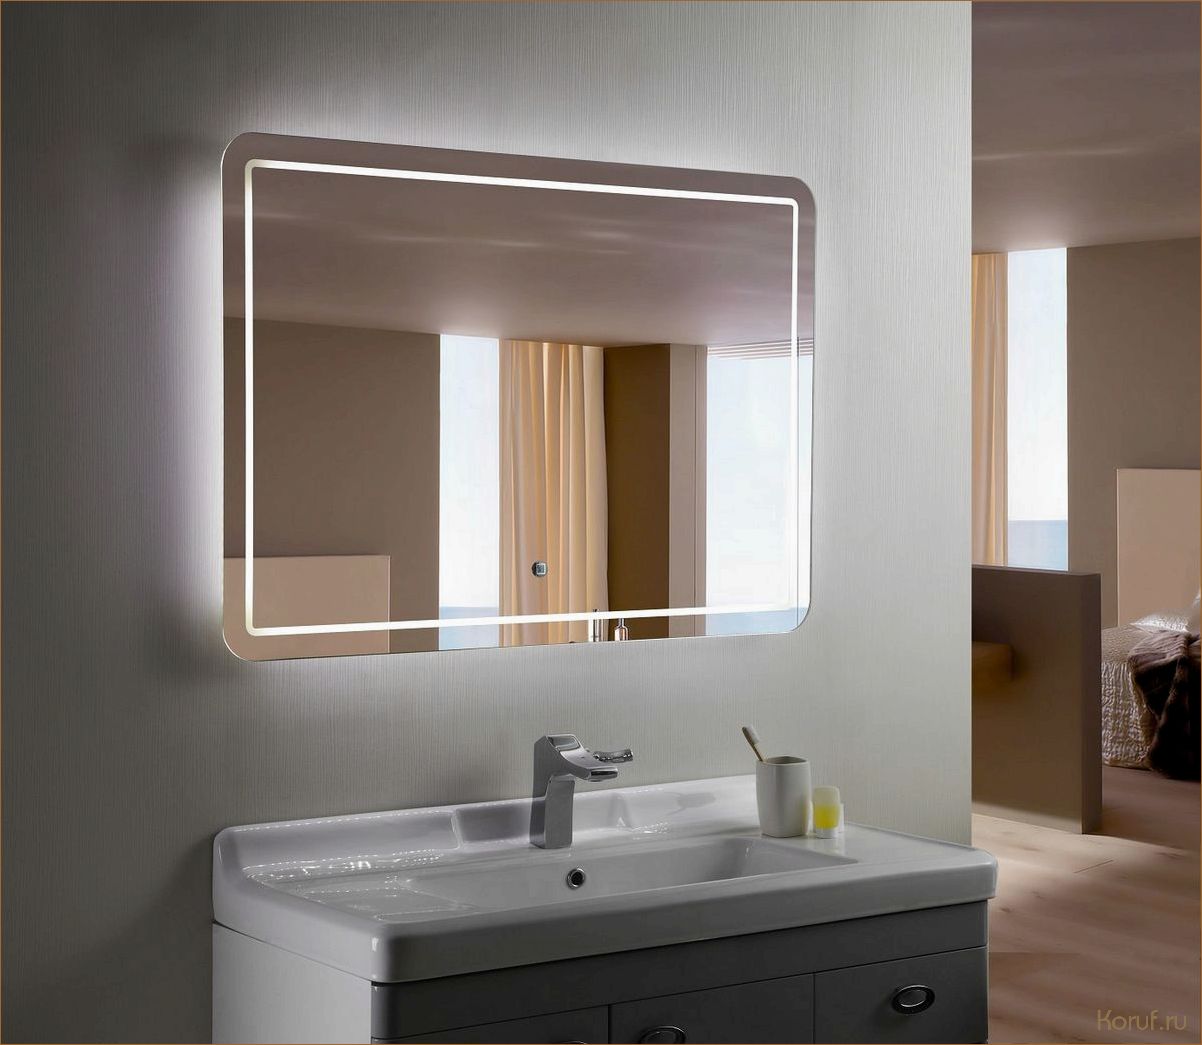 Уникальный стиль и комфорт: душевая кабина с мозаичным дизайном для вашей ванной комнаты